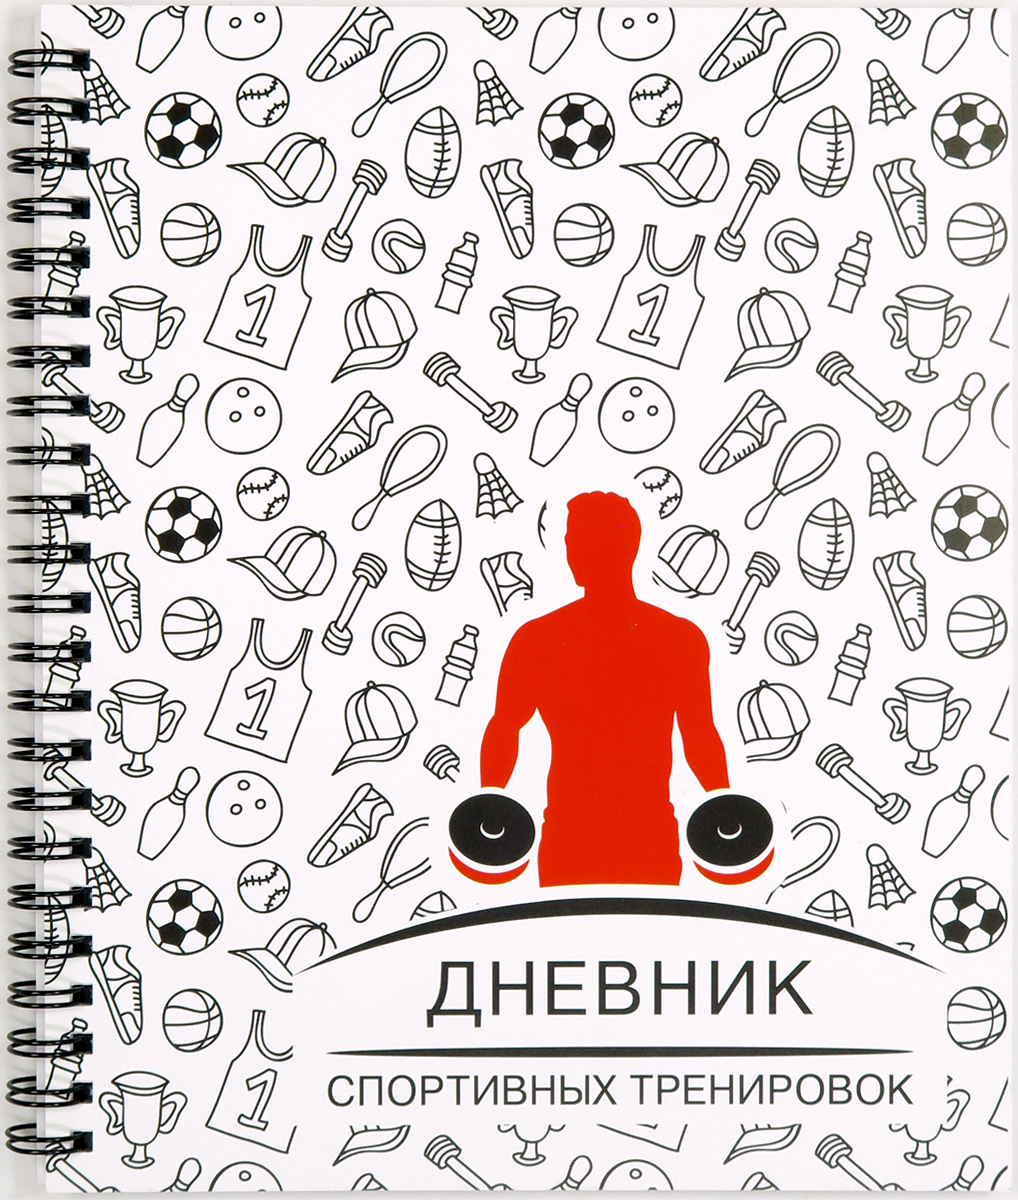 Фолиант Дневник спортивных тренировок 65 листов цвет белый черный красный